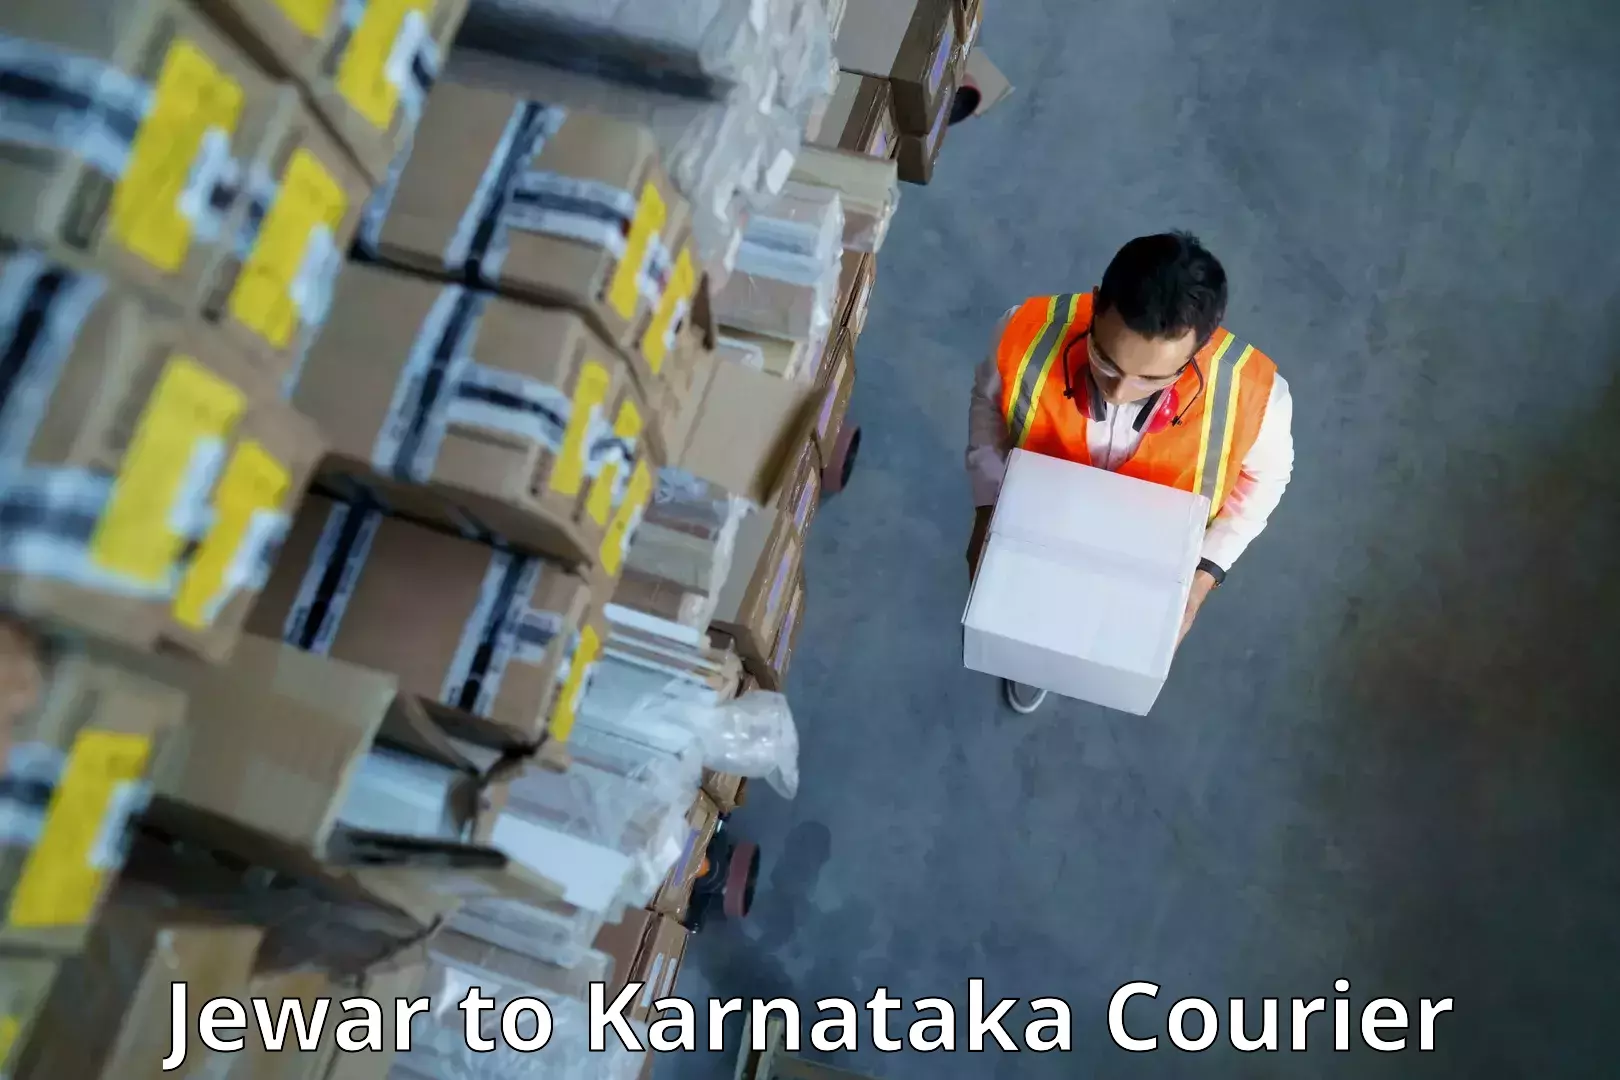 Lightweight courier Jewar to Karnataka